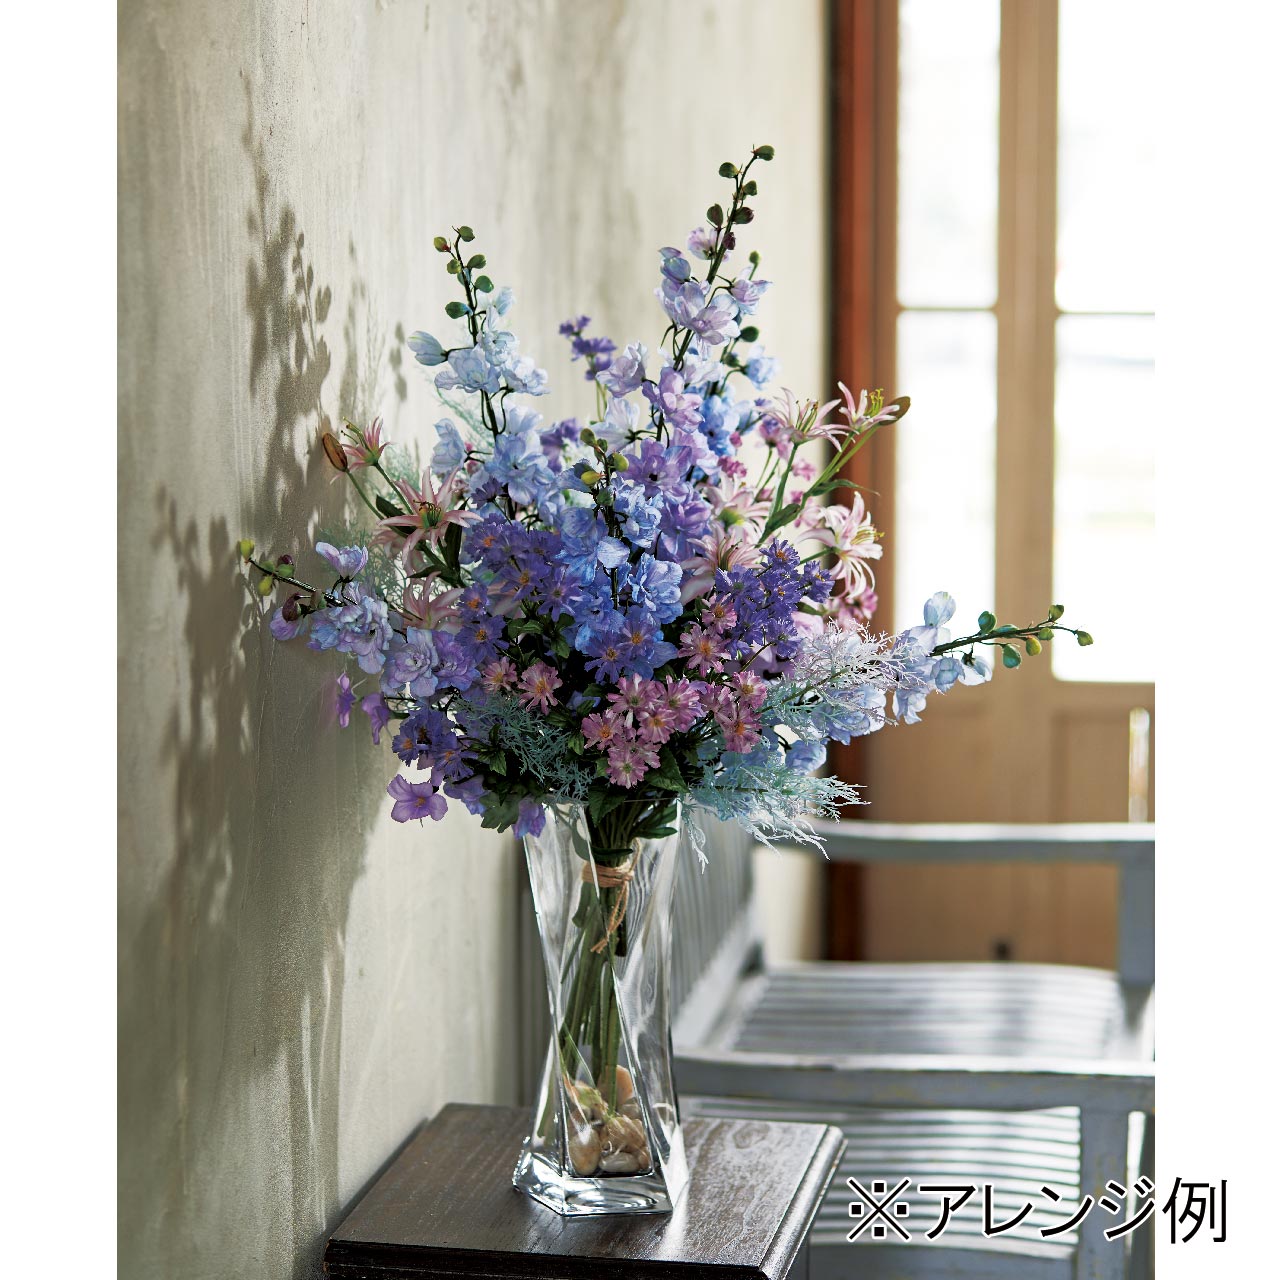 マイフラ 通販 Magiq セザンヌデルフィニウム ライトブルー アーティフィシャルフラワー 造花 Fm 005 デルフィニウム ライトブルー Magiq アーティフィシャルフラワー 造花 全国にmagiq 花器 花資材などをお届けします